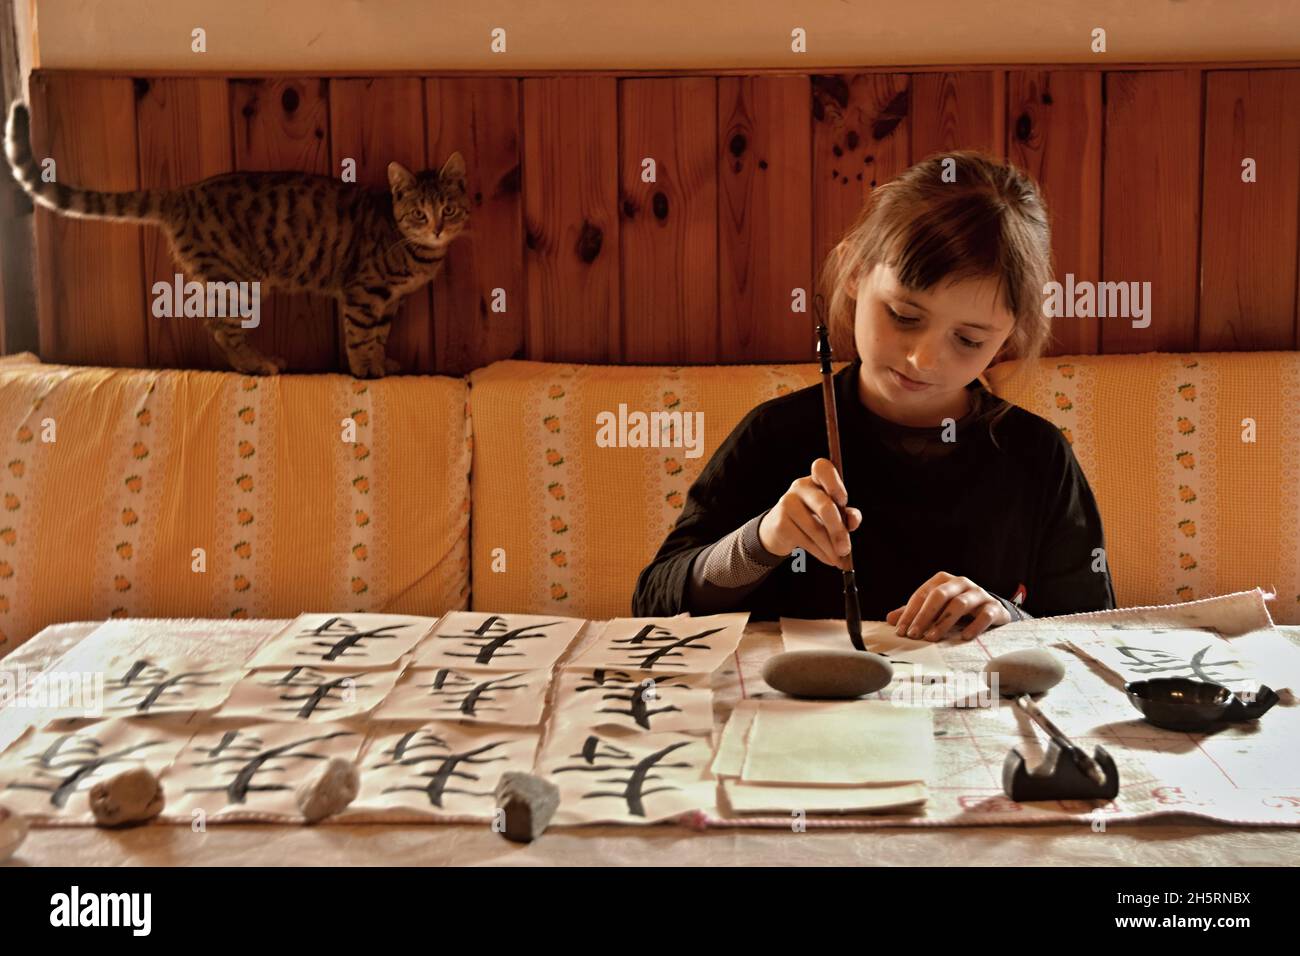 BLATNO, REPUBBLICA CECA - CIRCA OTTOBRE 2021: Una bambina pratica scrivere calligrafia e un gattino tabby la sta guardando. Foto Stock